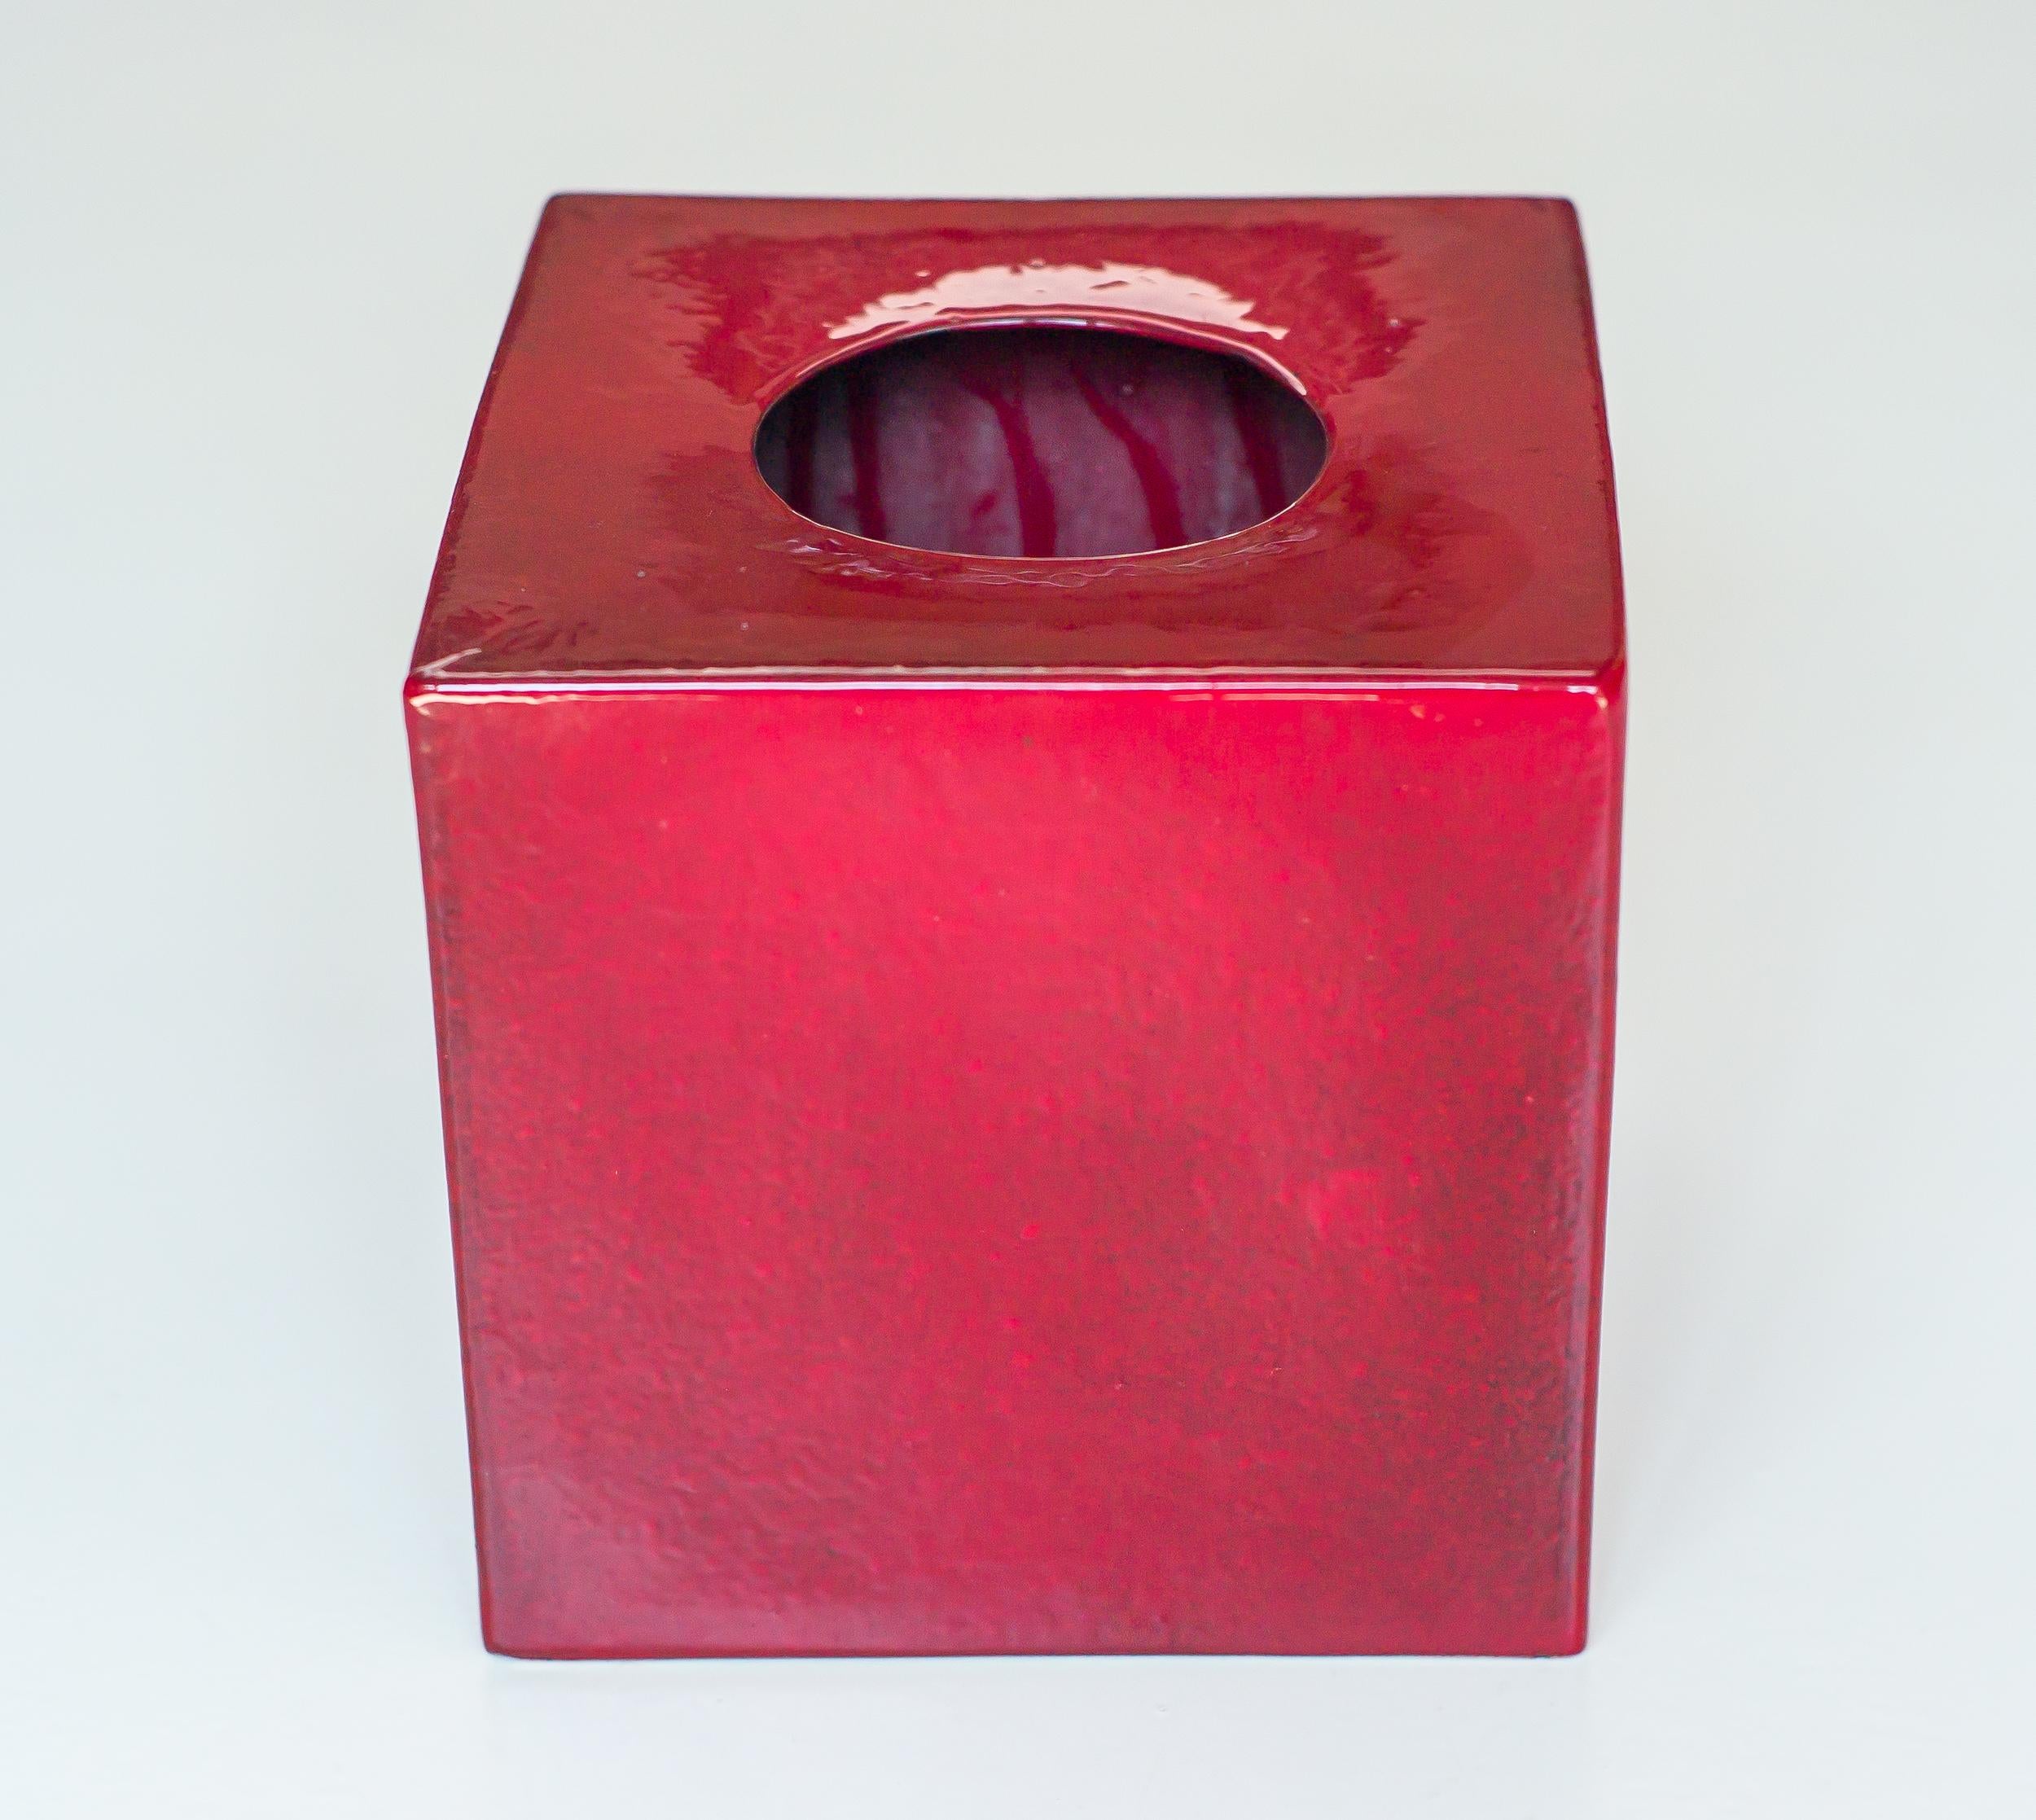 Ochsenblutrote Vase Modell 585, entworfen von Ettore Sottsass im Jahr 1960.
Realisiert um 1961 von der Società Ceramica Toscana di Figline für die Mailänder Galerie Il Sestante in verschiedenen Farben.
Unten signiert.
Literatur; Ferrari Fulvio,